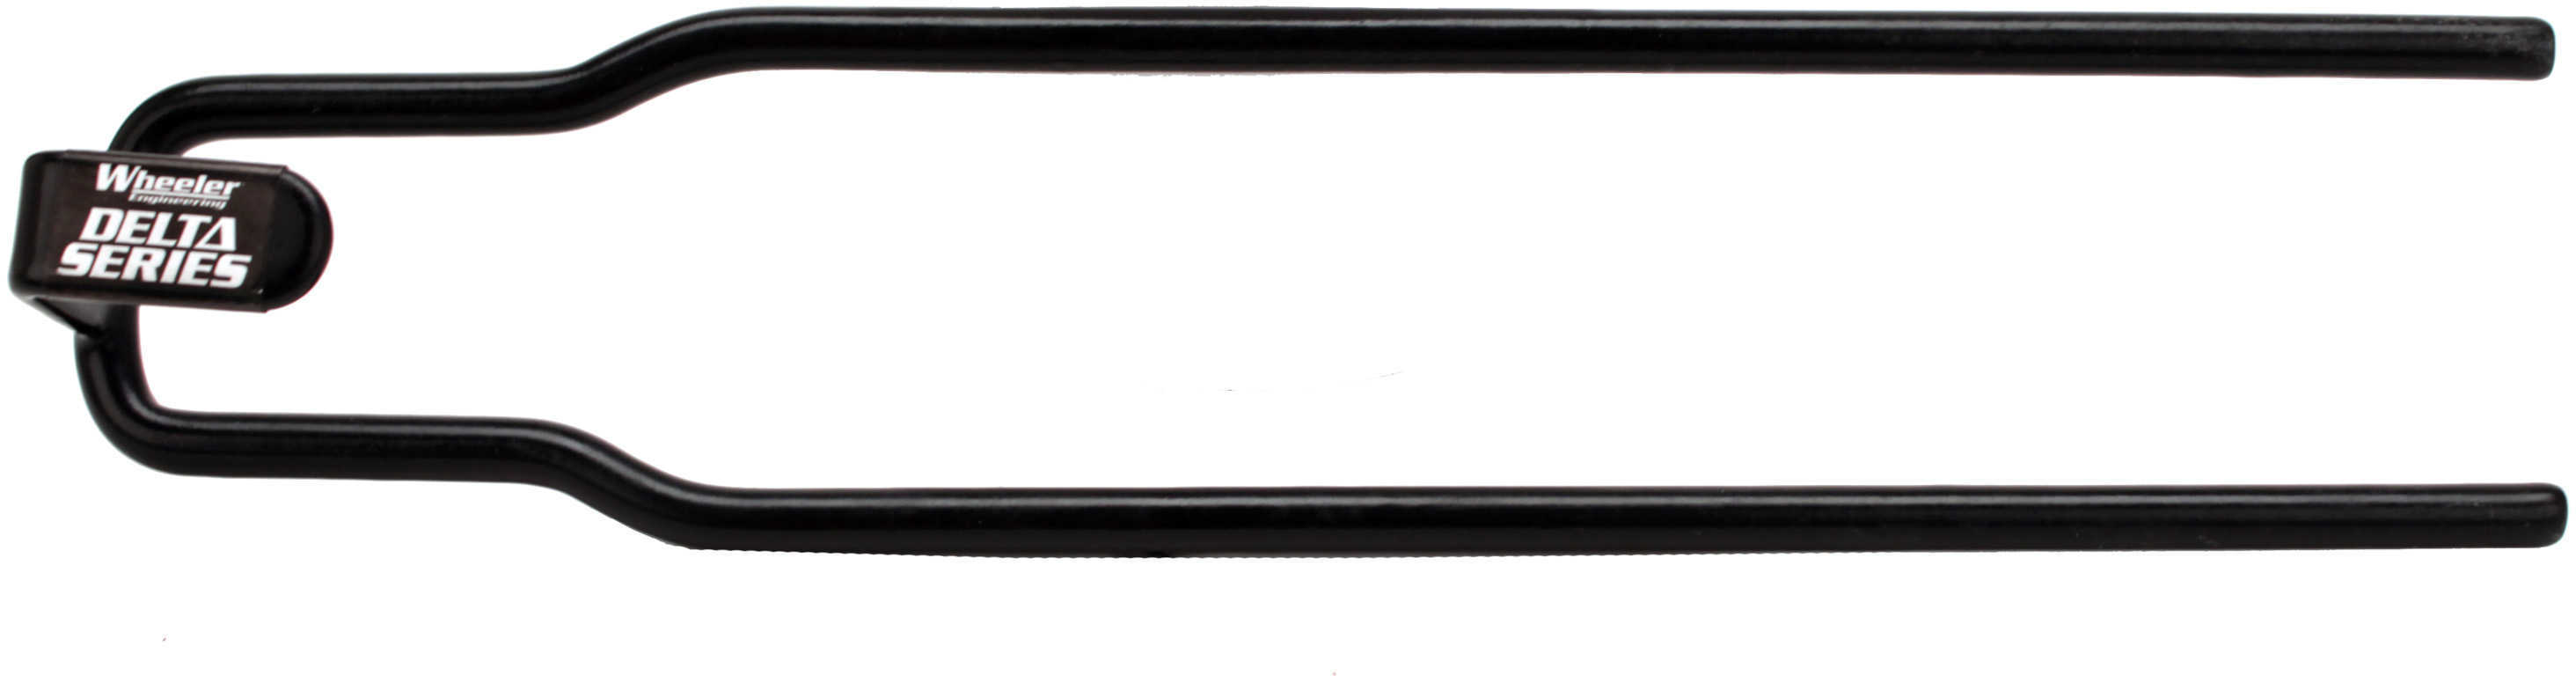 Wheeler Delta Series AR-15 Ring Tool Black 209943